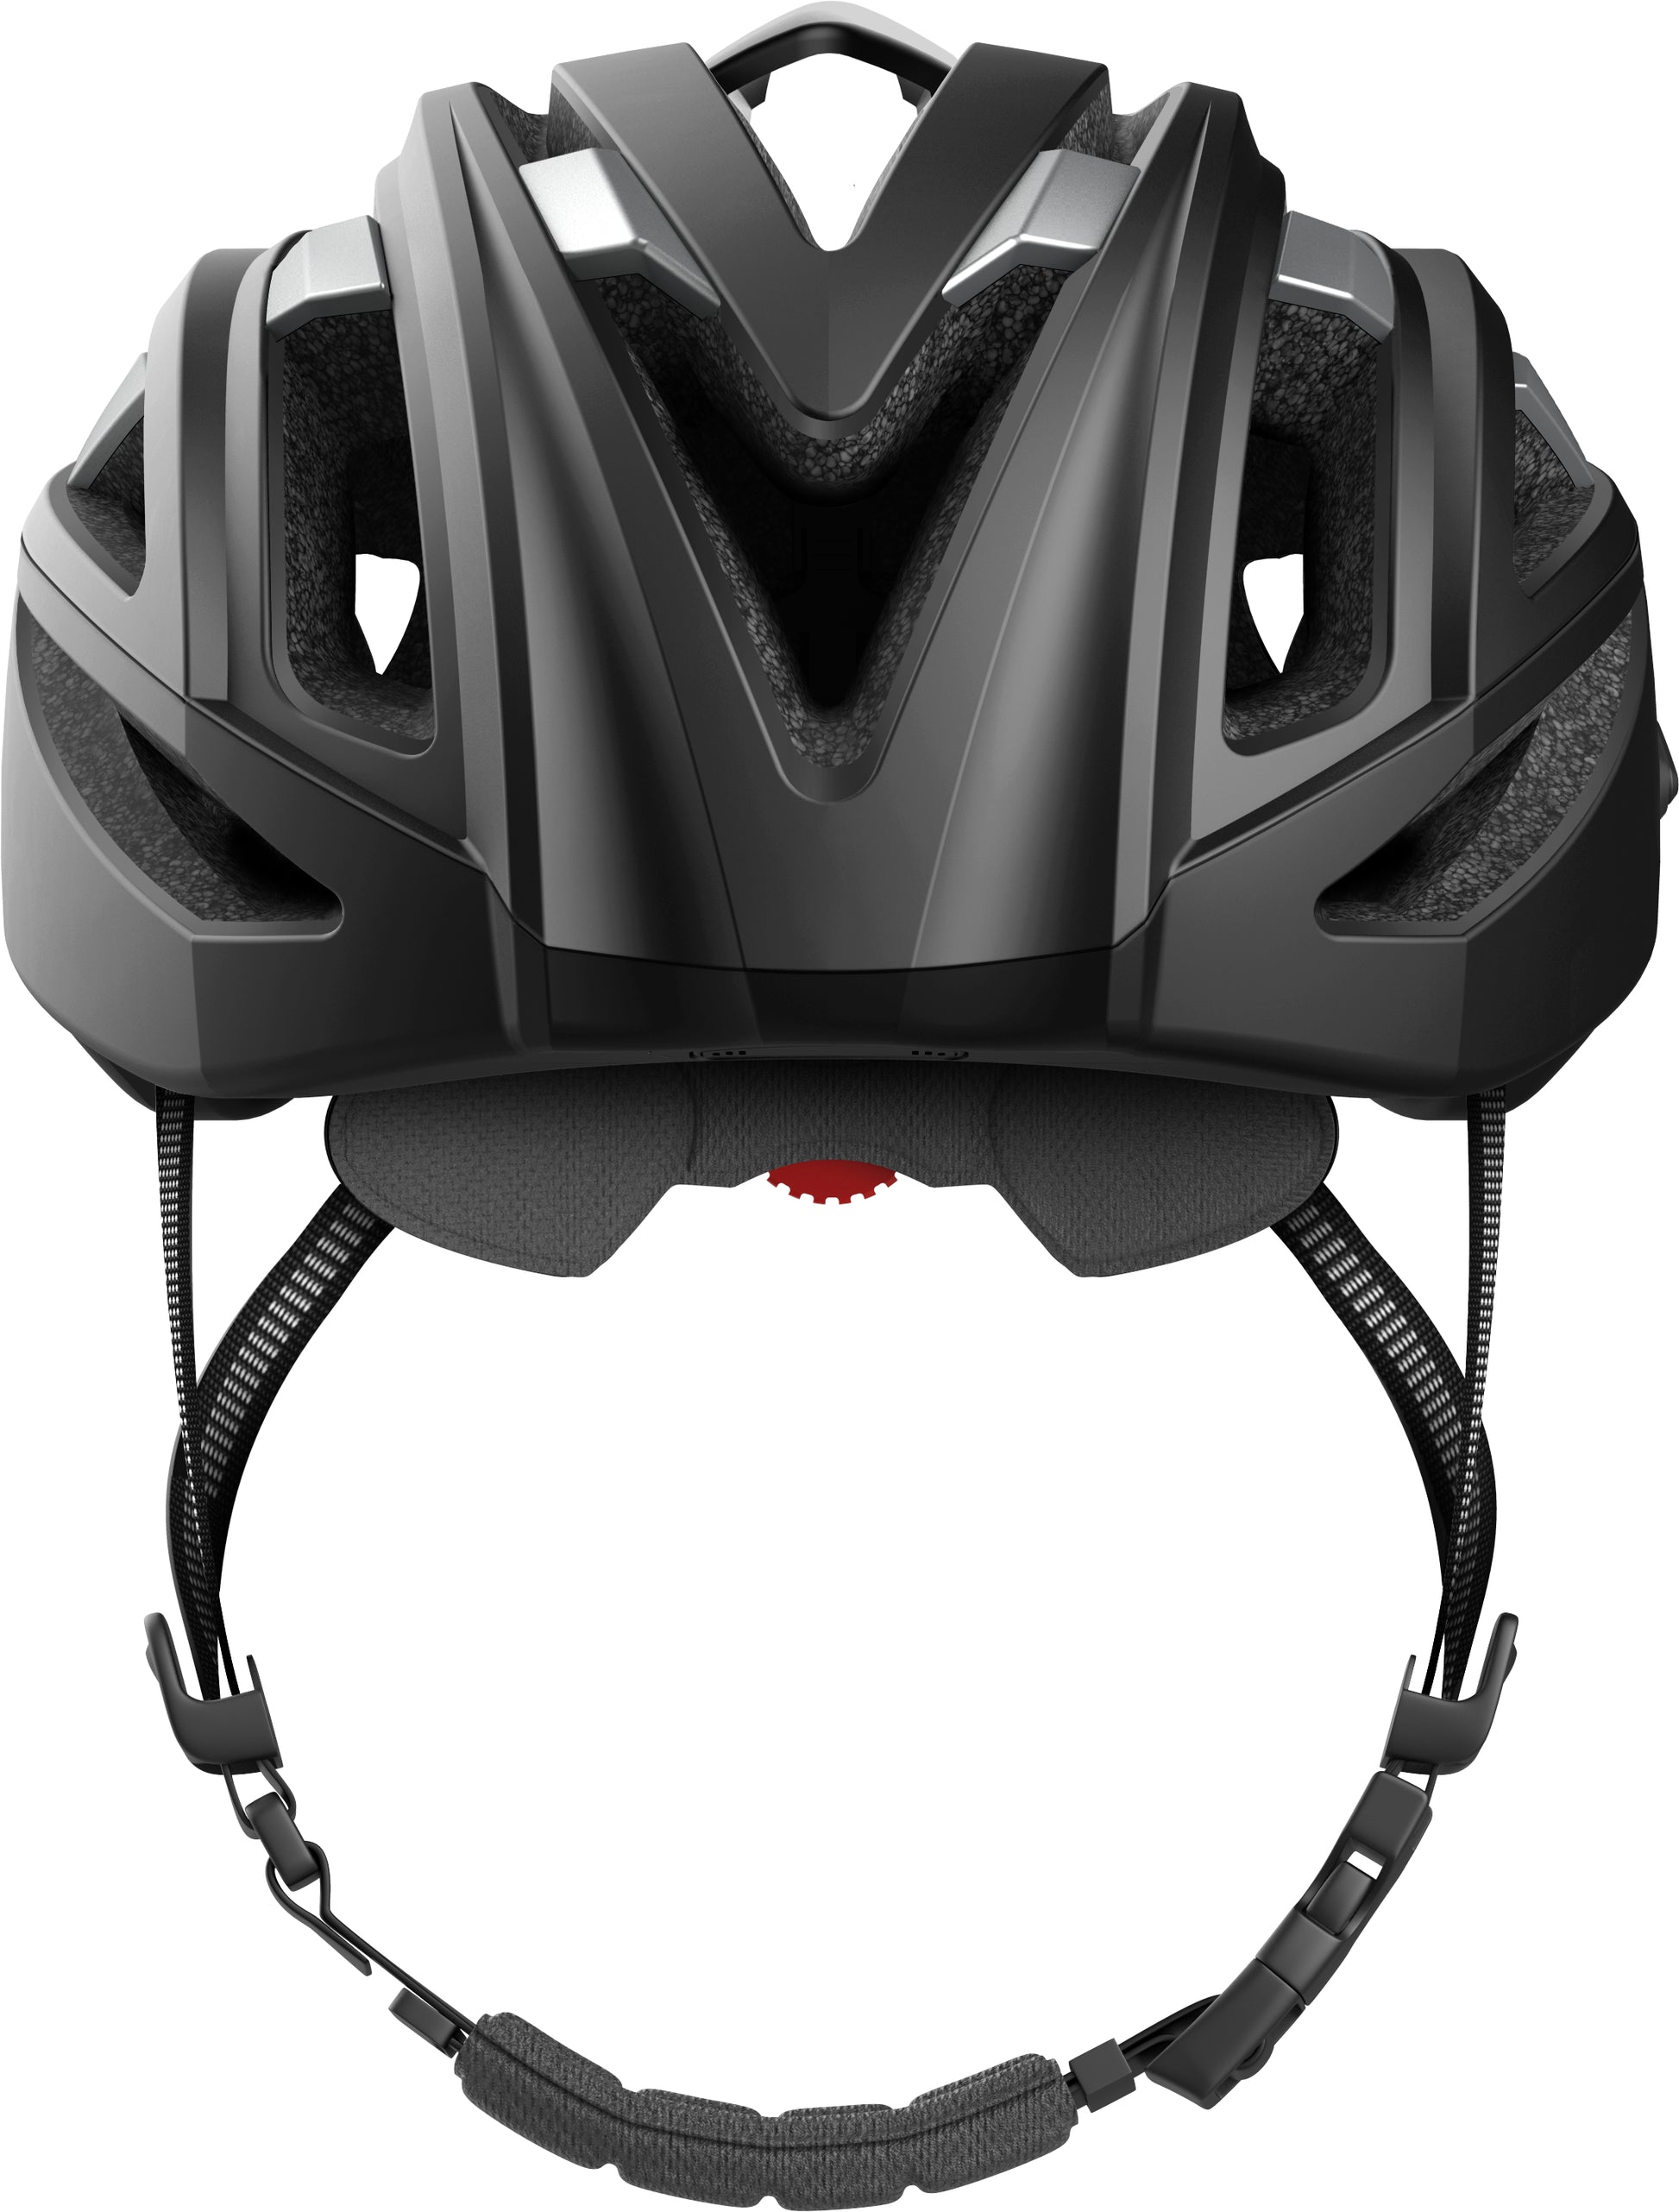 Casco Mountain Bike Sena M1 EVO con Bluetooth Mesh 2.0 - Tienda